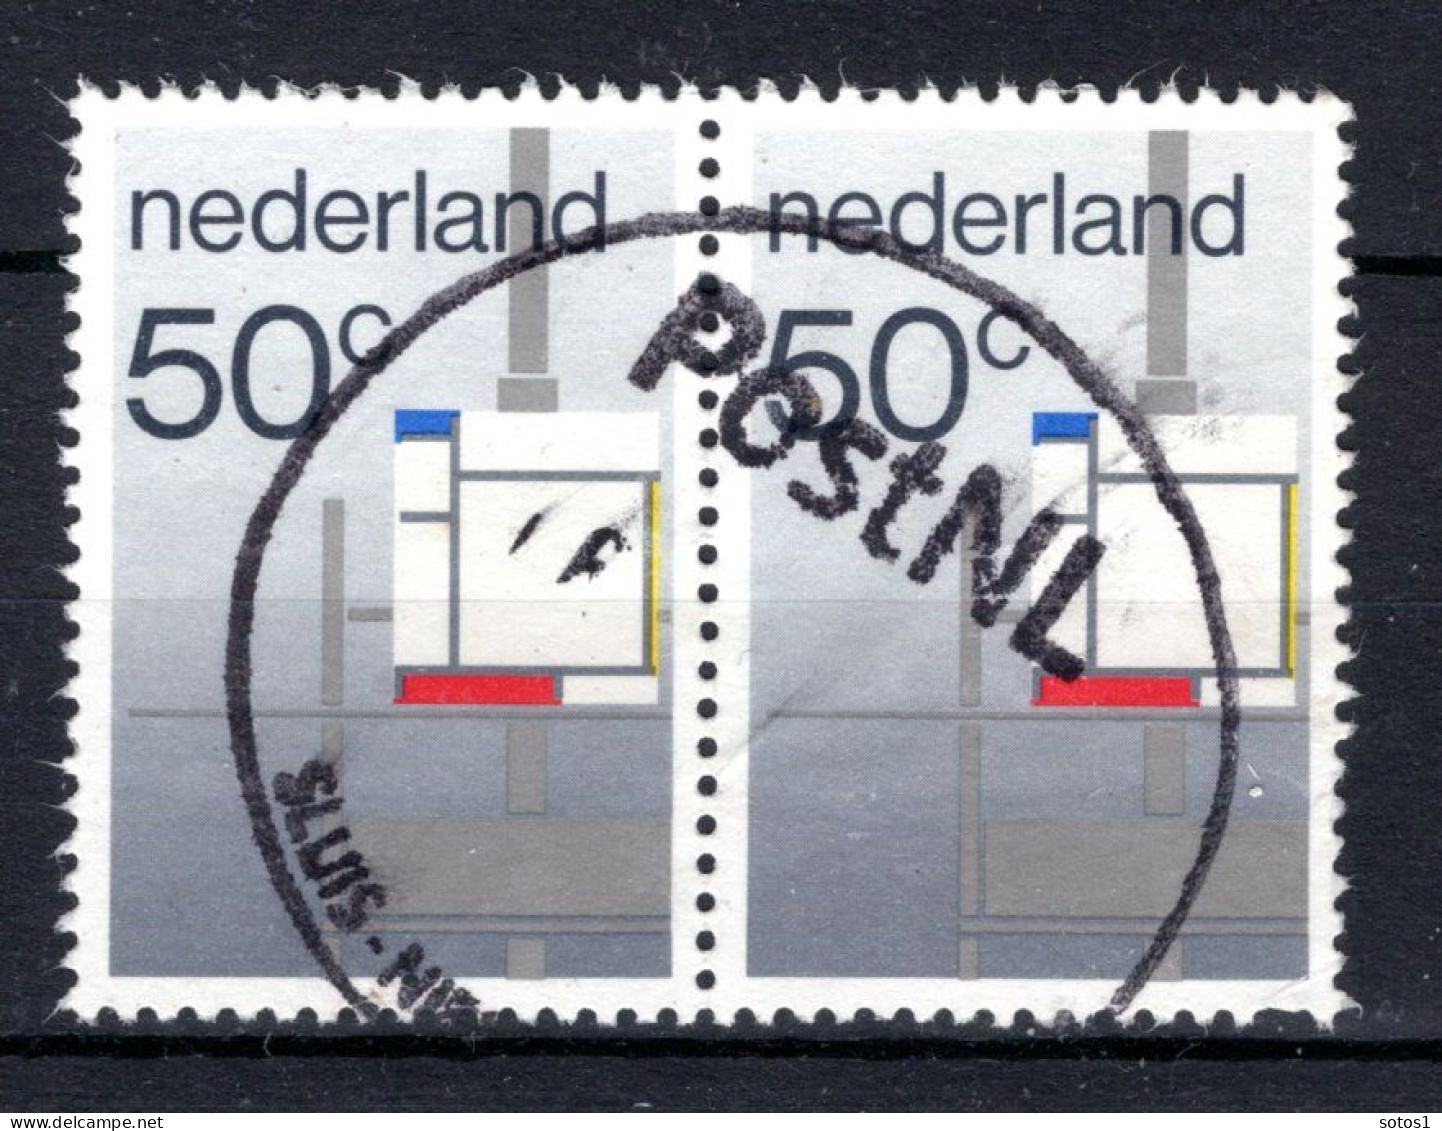 NEDERLAND 1287° Gestempeld 1983 - Beweging De Stijl -2 - Used Stamps